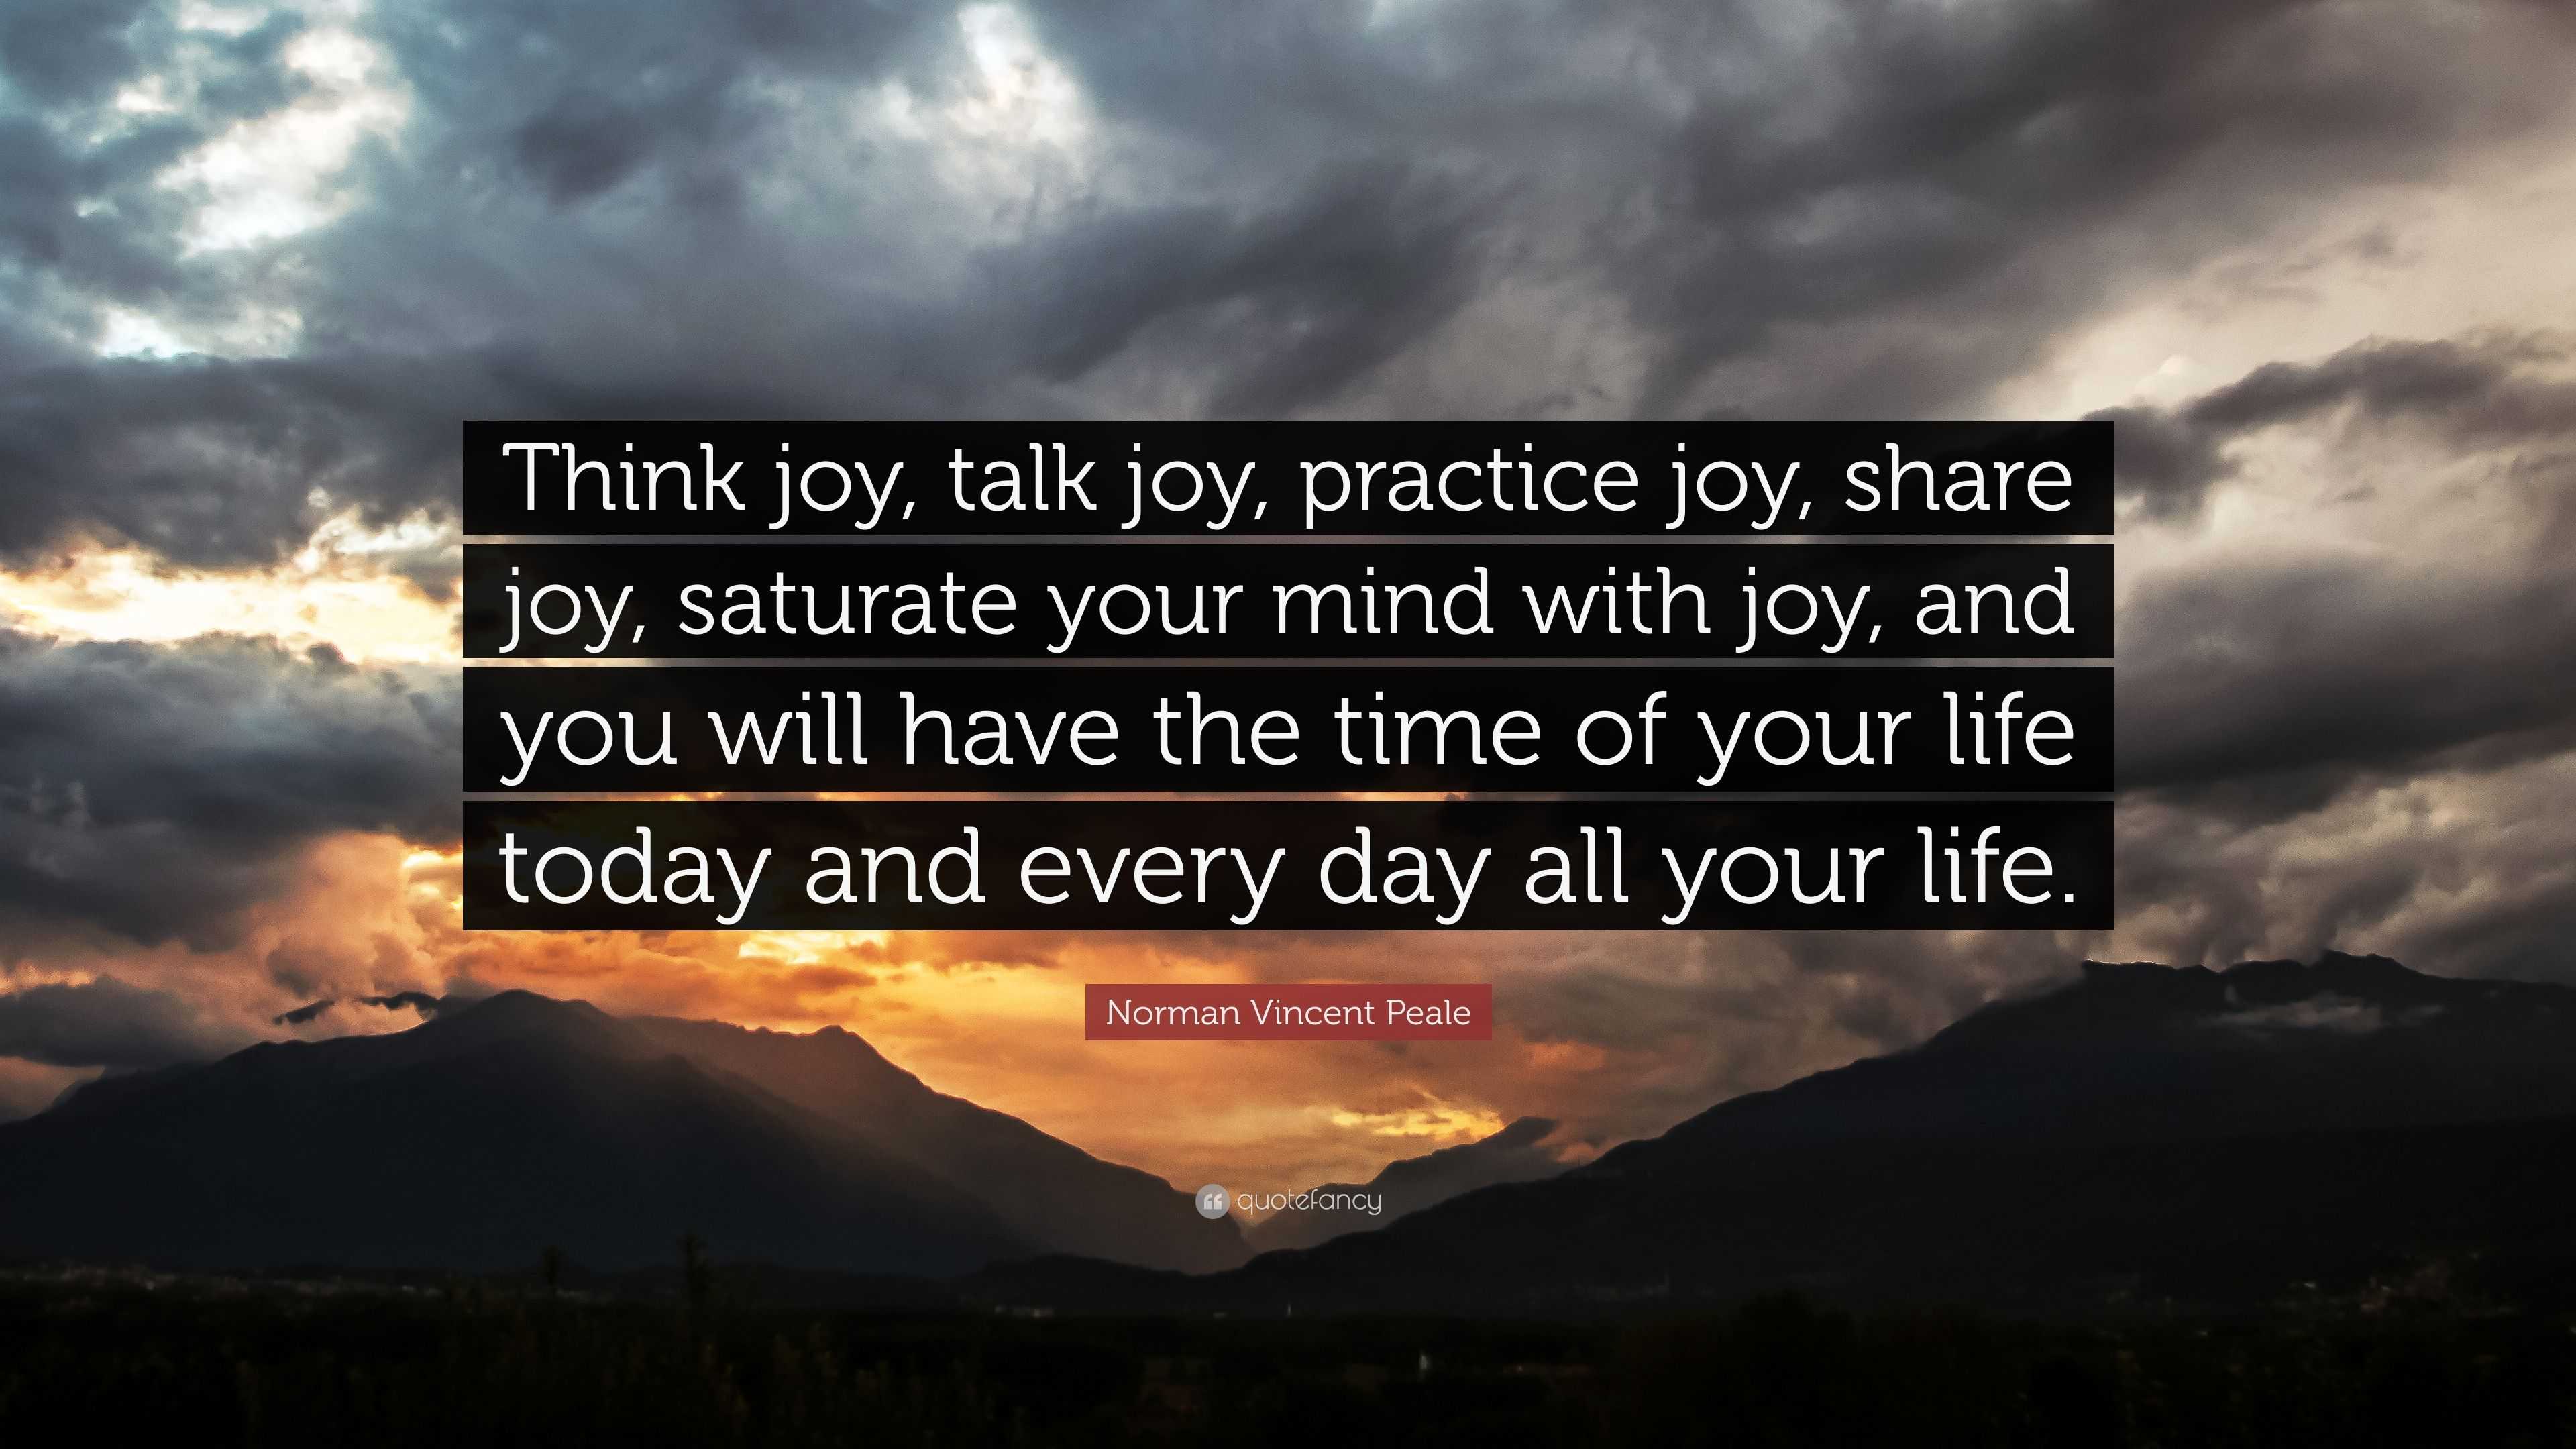 Norman Vincent Peale Quote: “Think joy, talk joy, practice joy, share ...